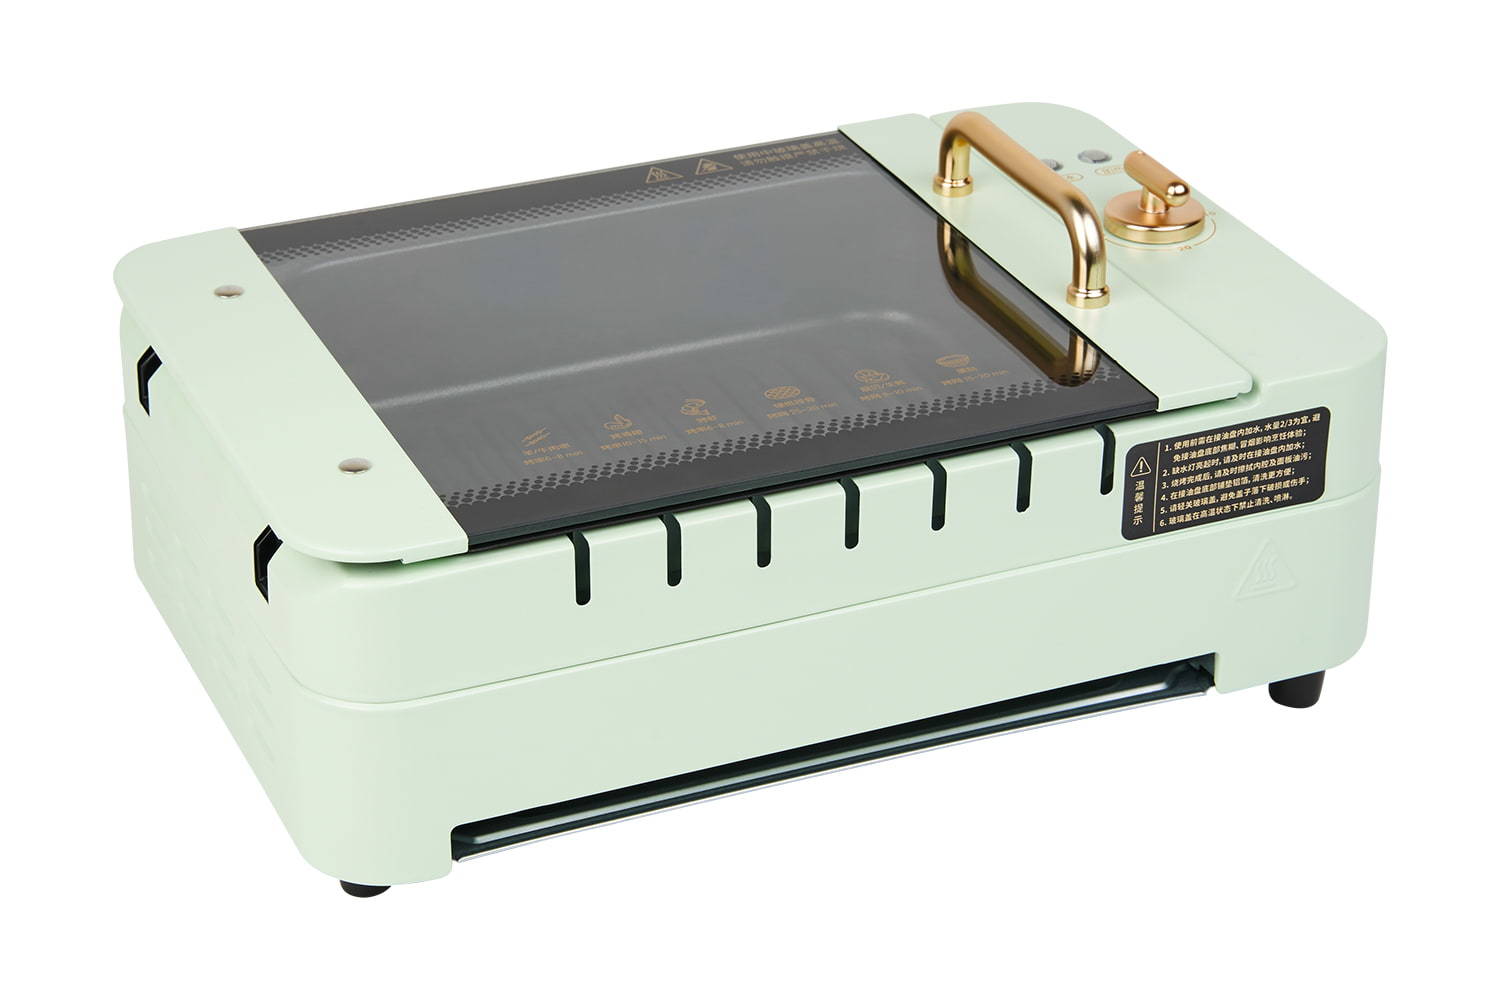 YYK-10JZ02 Kebab barbecue machine, household, multifunctional, indoor, electric oven, smokeless